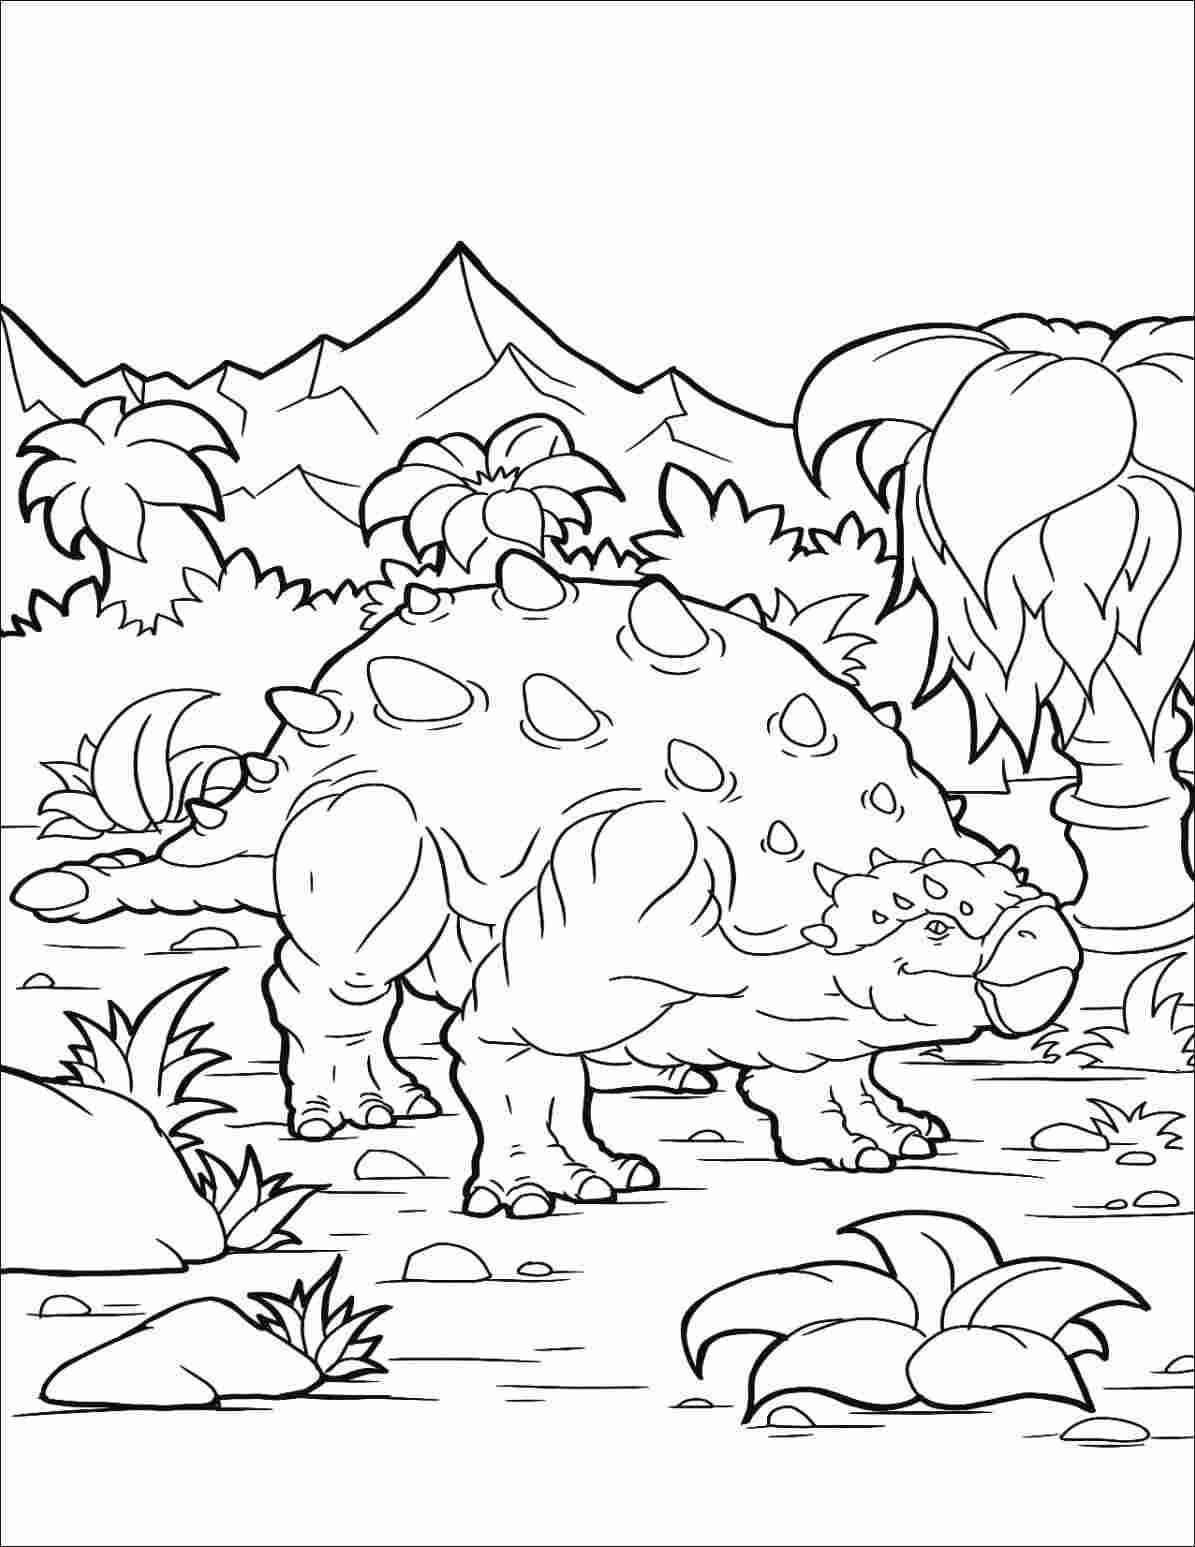 Ankylosaurus ha le corna sul dorso Disegni da colorare